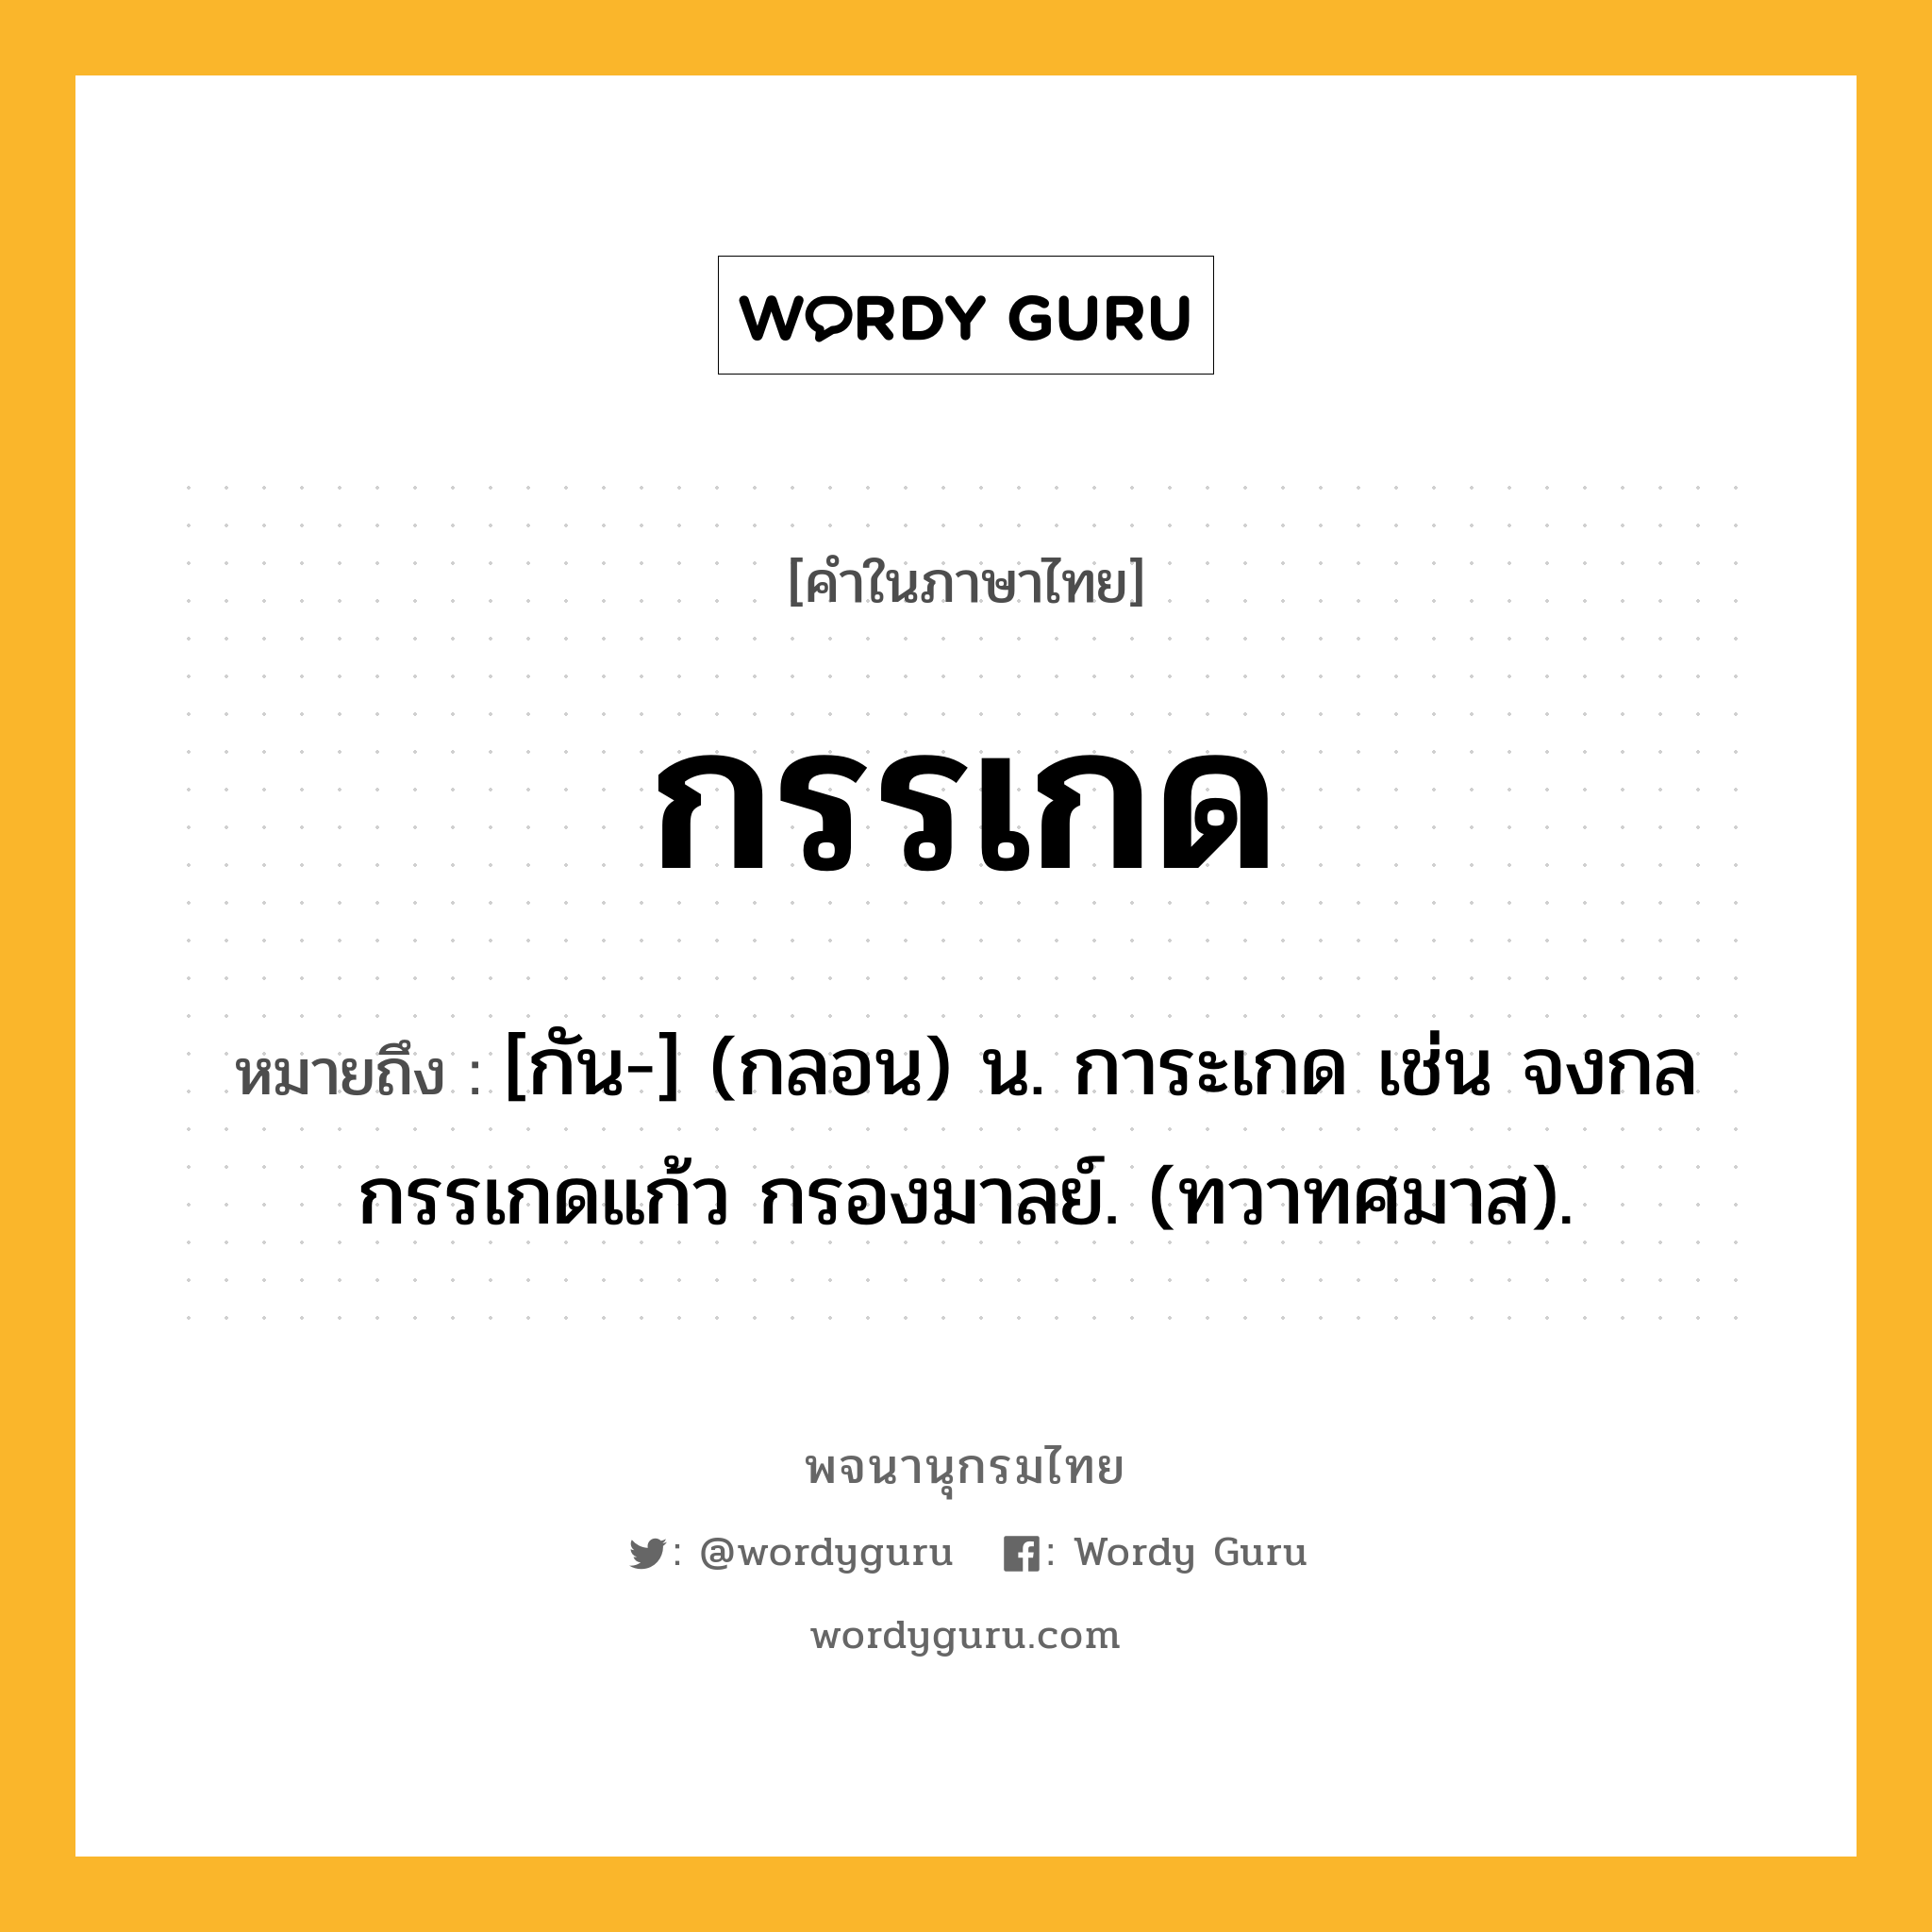 กรรเกด หมายถึงอะไร?, คำในภาษาไทย กรรเกด หมายถึง [กัน-] (กลอน) น. การะเกด เช่น จงกลกรรเกดแก้ว กรองมาลย์. (ทวาทศมาส).